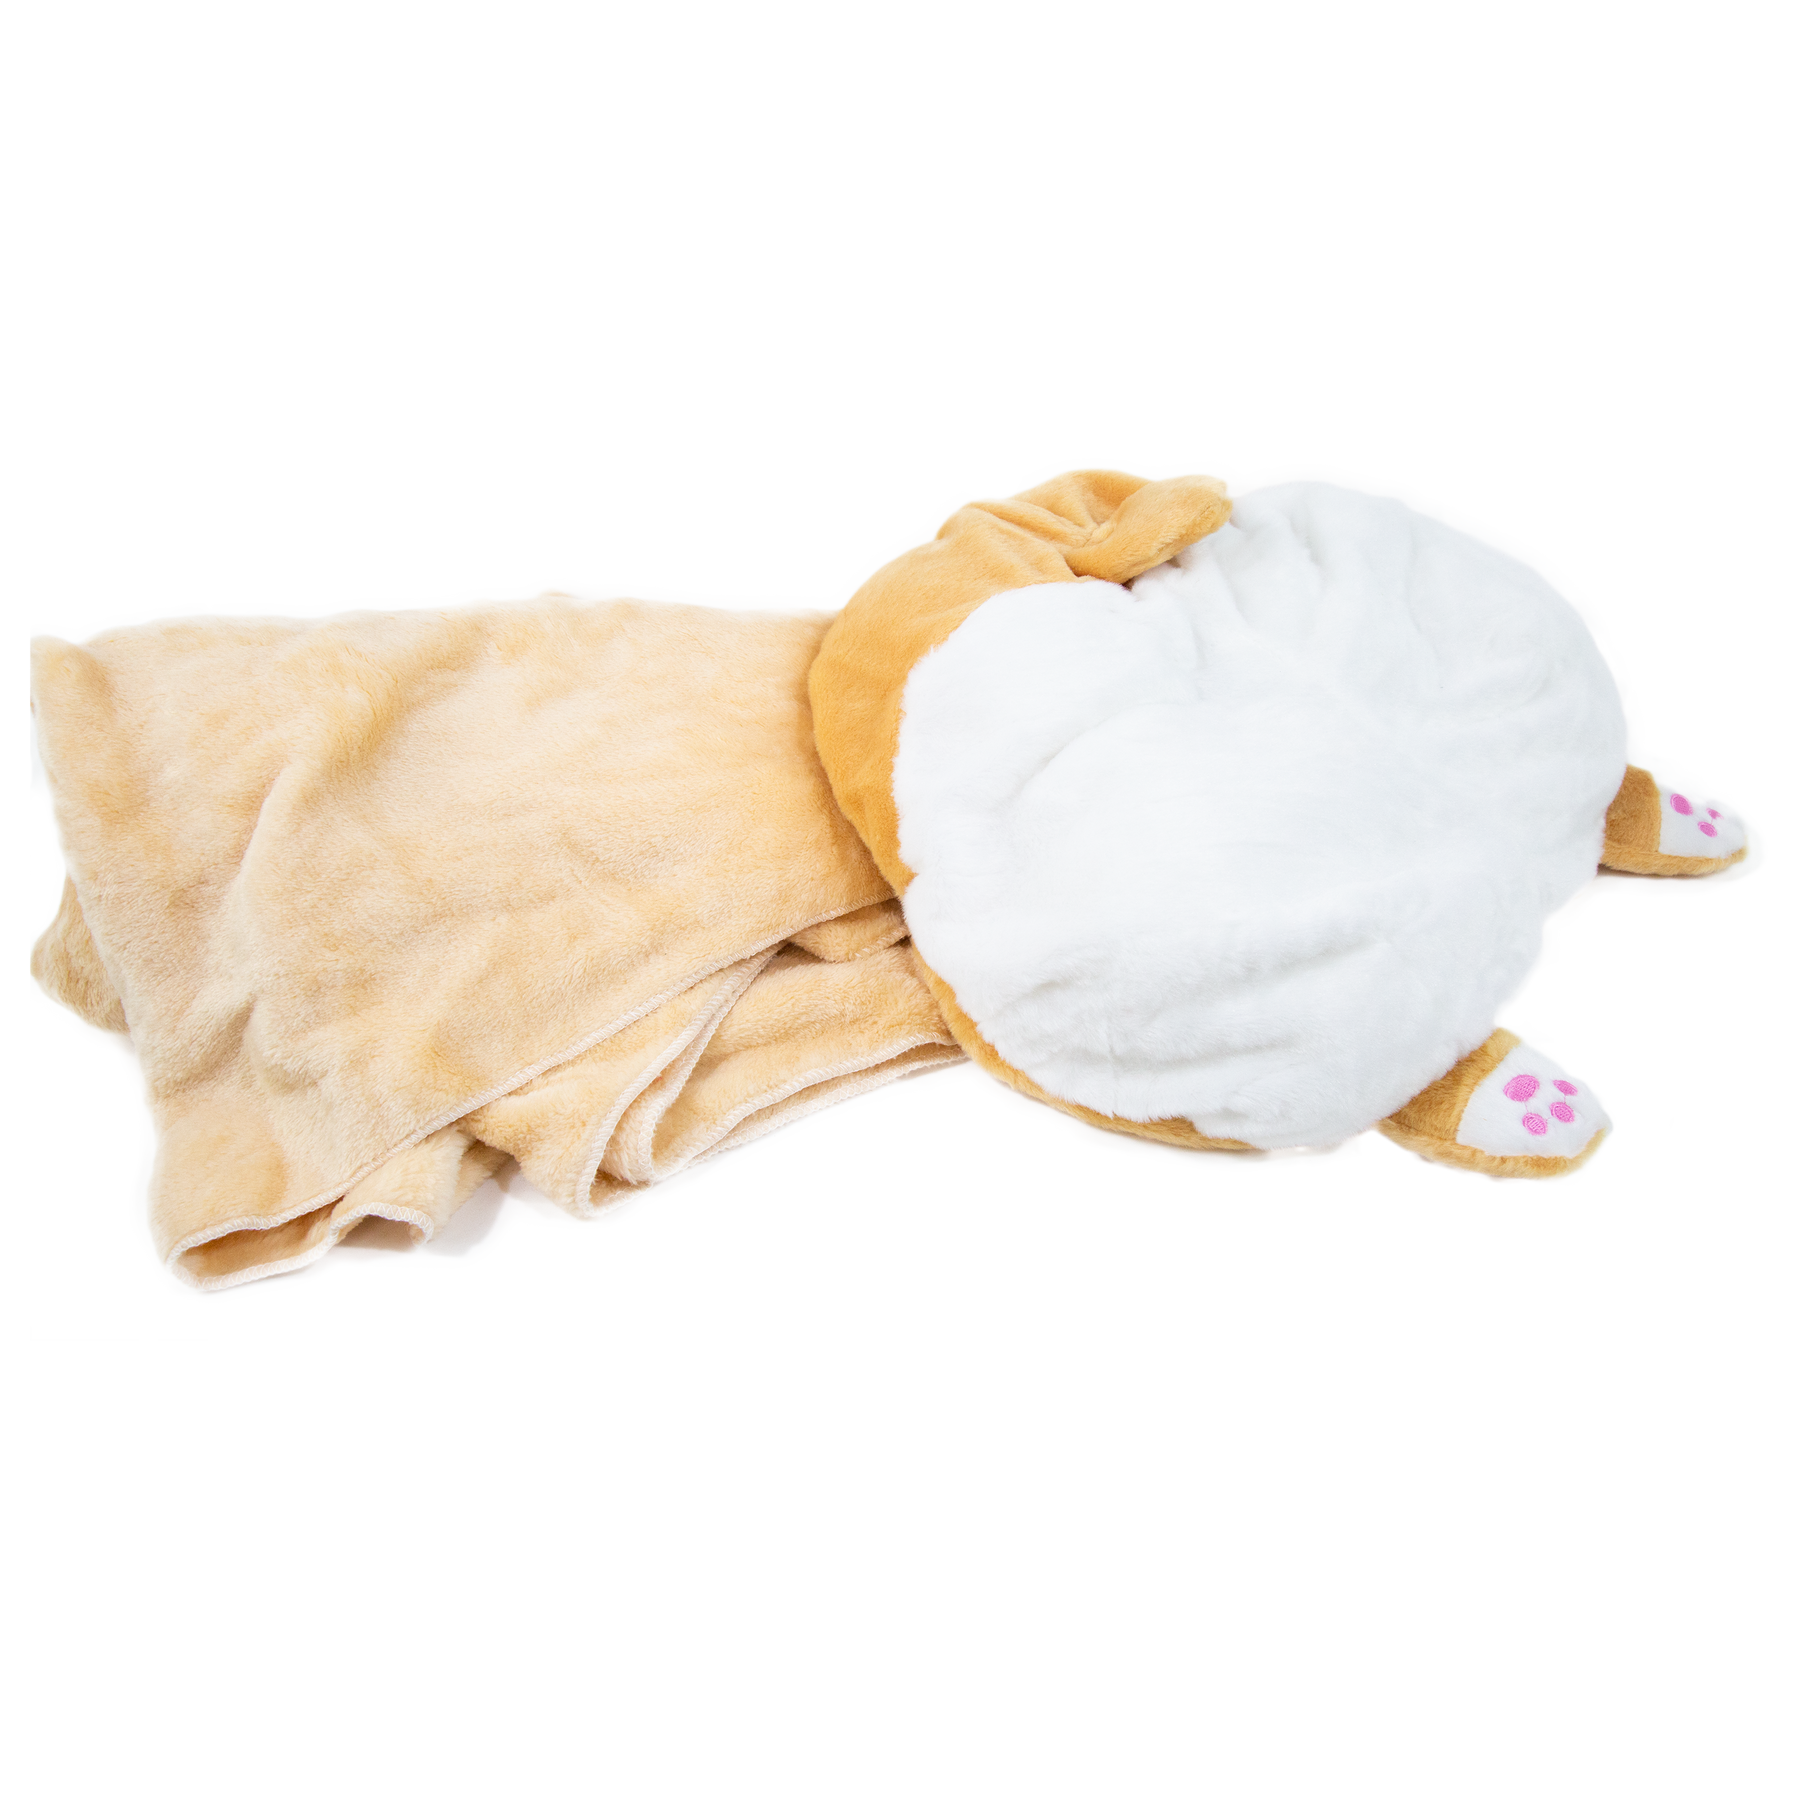 Giant Corgi Butt 3-in-1 Pillow / Hand Warmer / Blanket